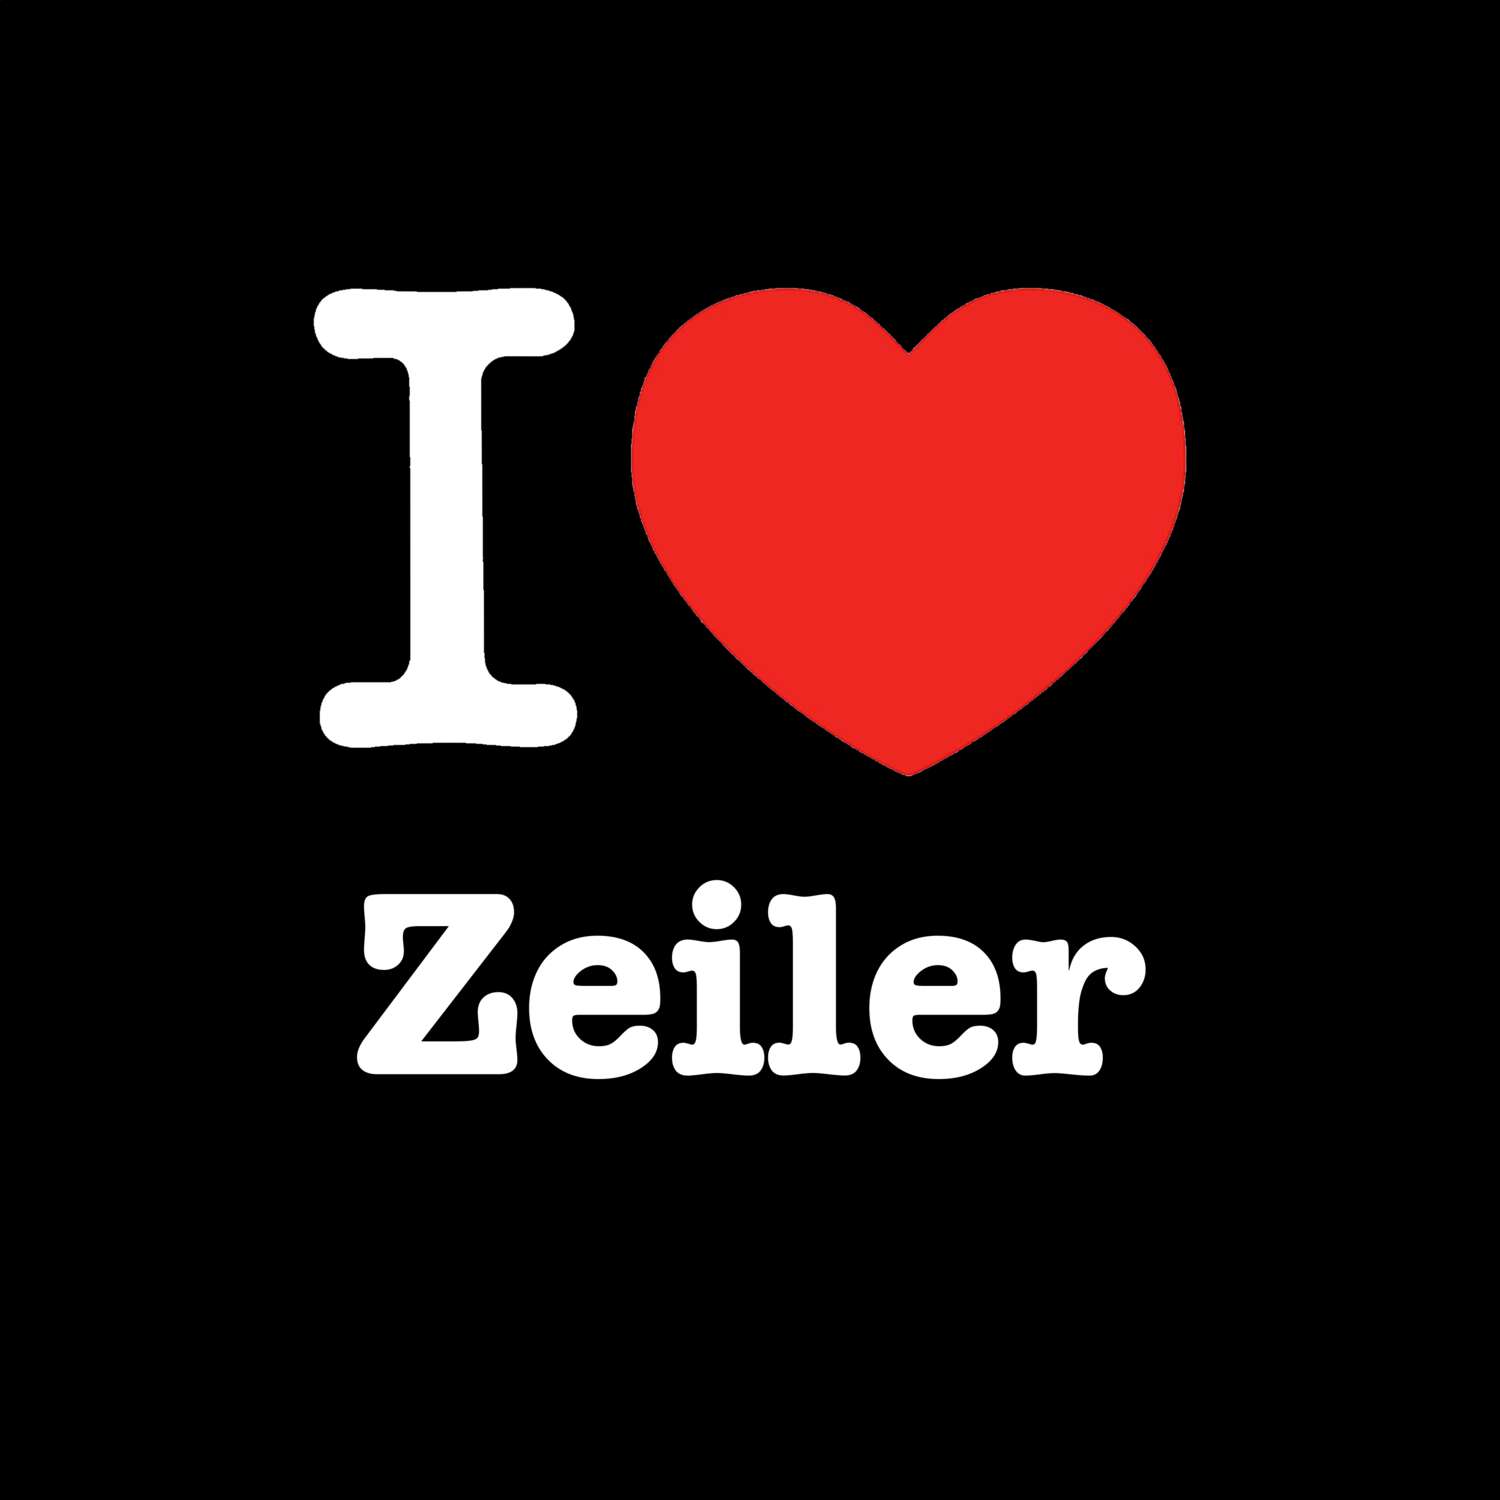 Zeiler T-Shirt »I love«